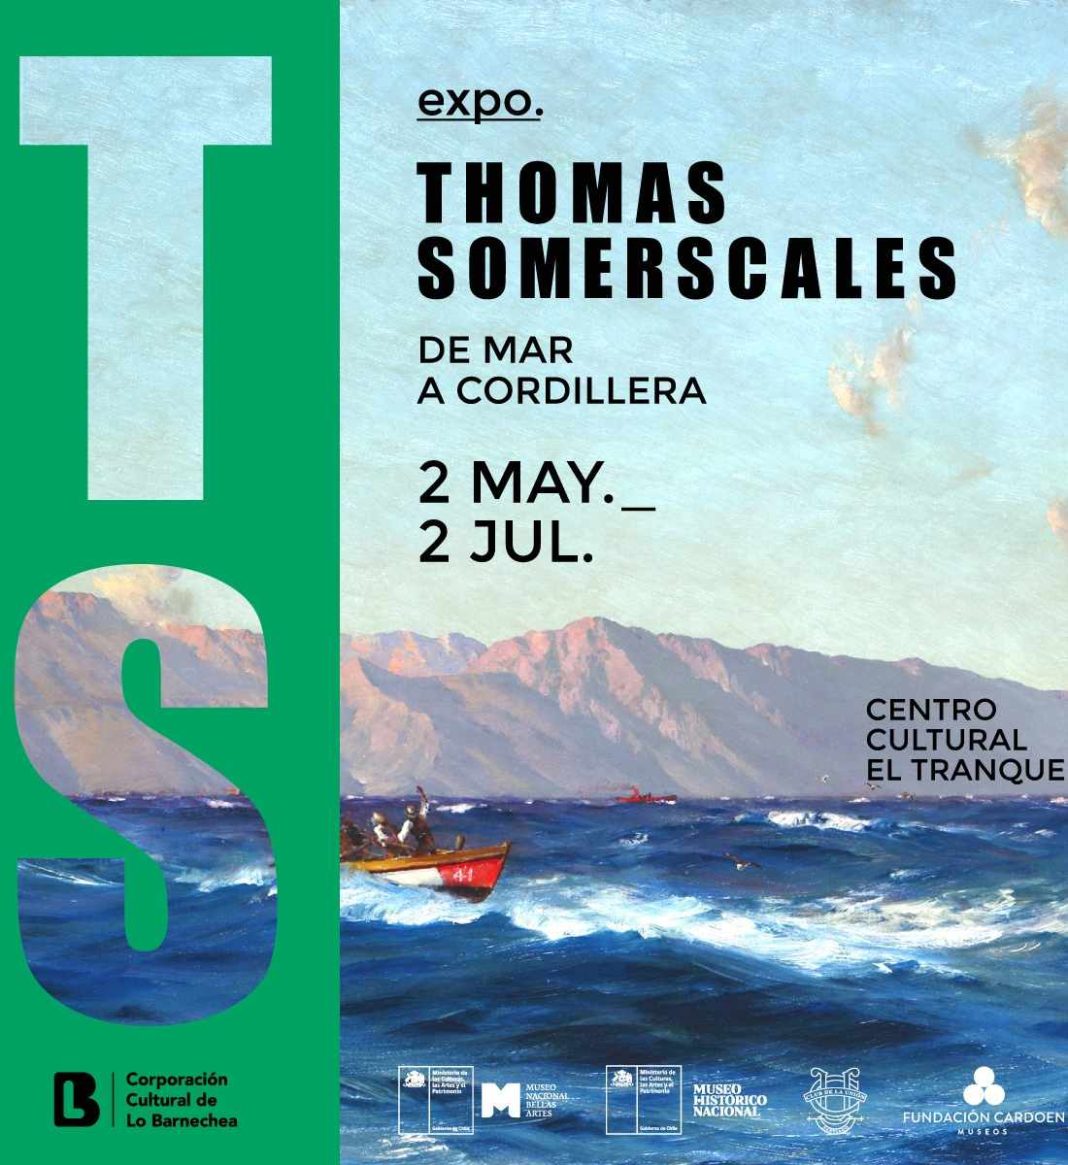 Lo Barnechea inaugura “De mar a cordillera”, una exposición sobre la obra del inglés Thomas Somerscales